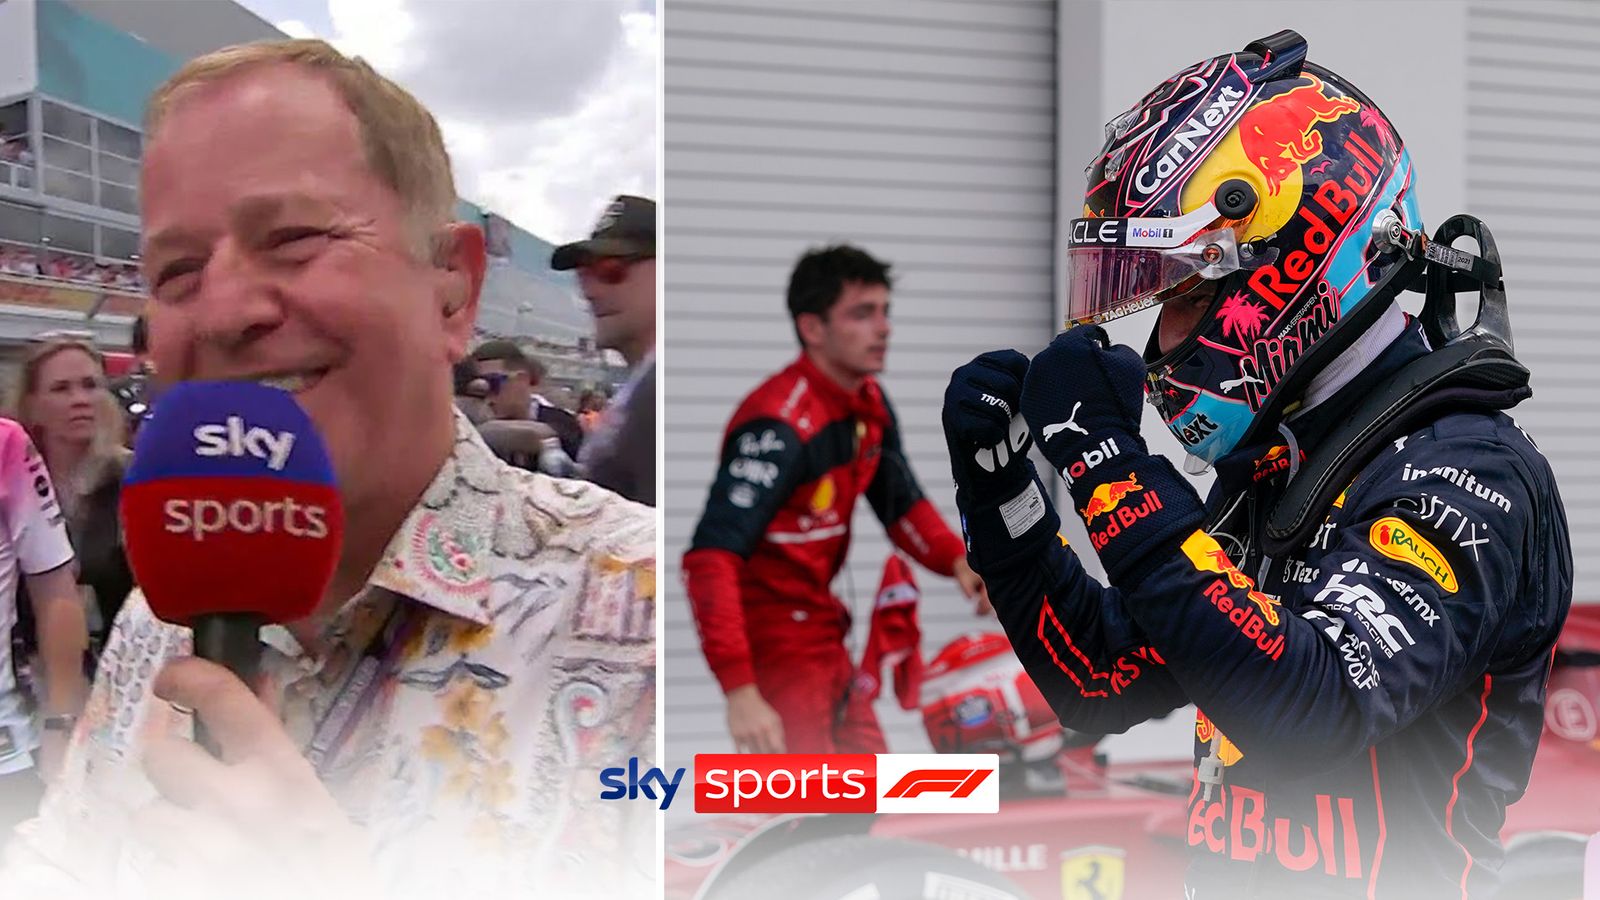 Martin Brundle: Passant en revue les débuts électriques du GP de Miami alors que Max Verstappen évince Charles Leclerc et que le « mystère » de Mercedes persiste